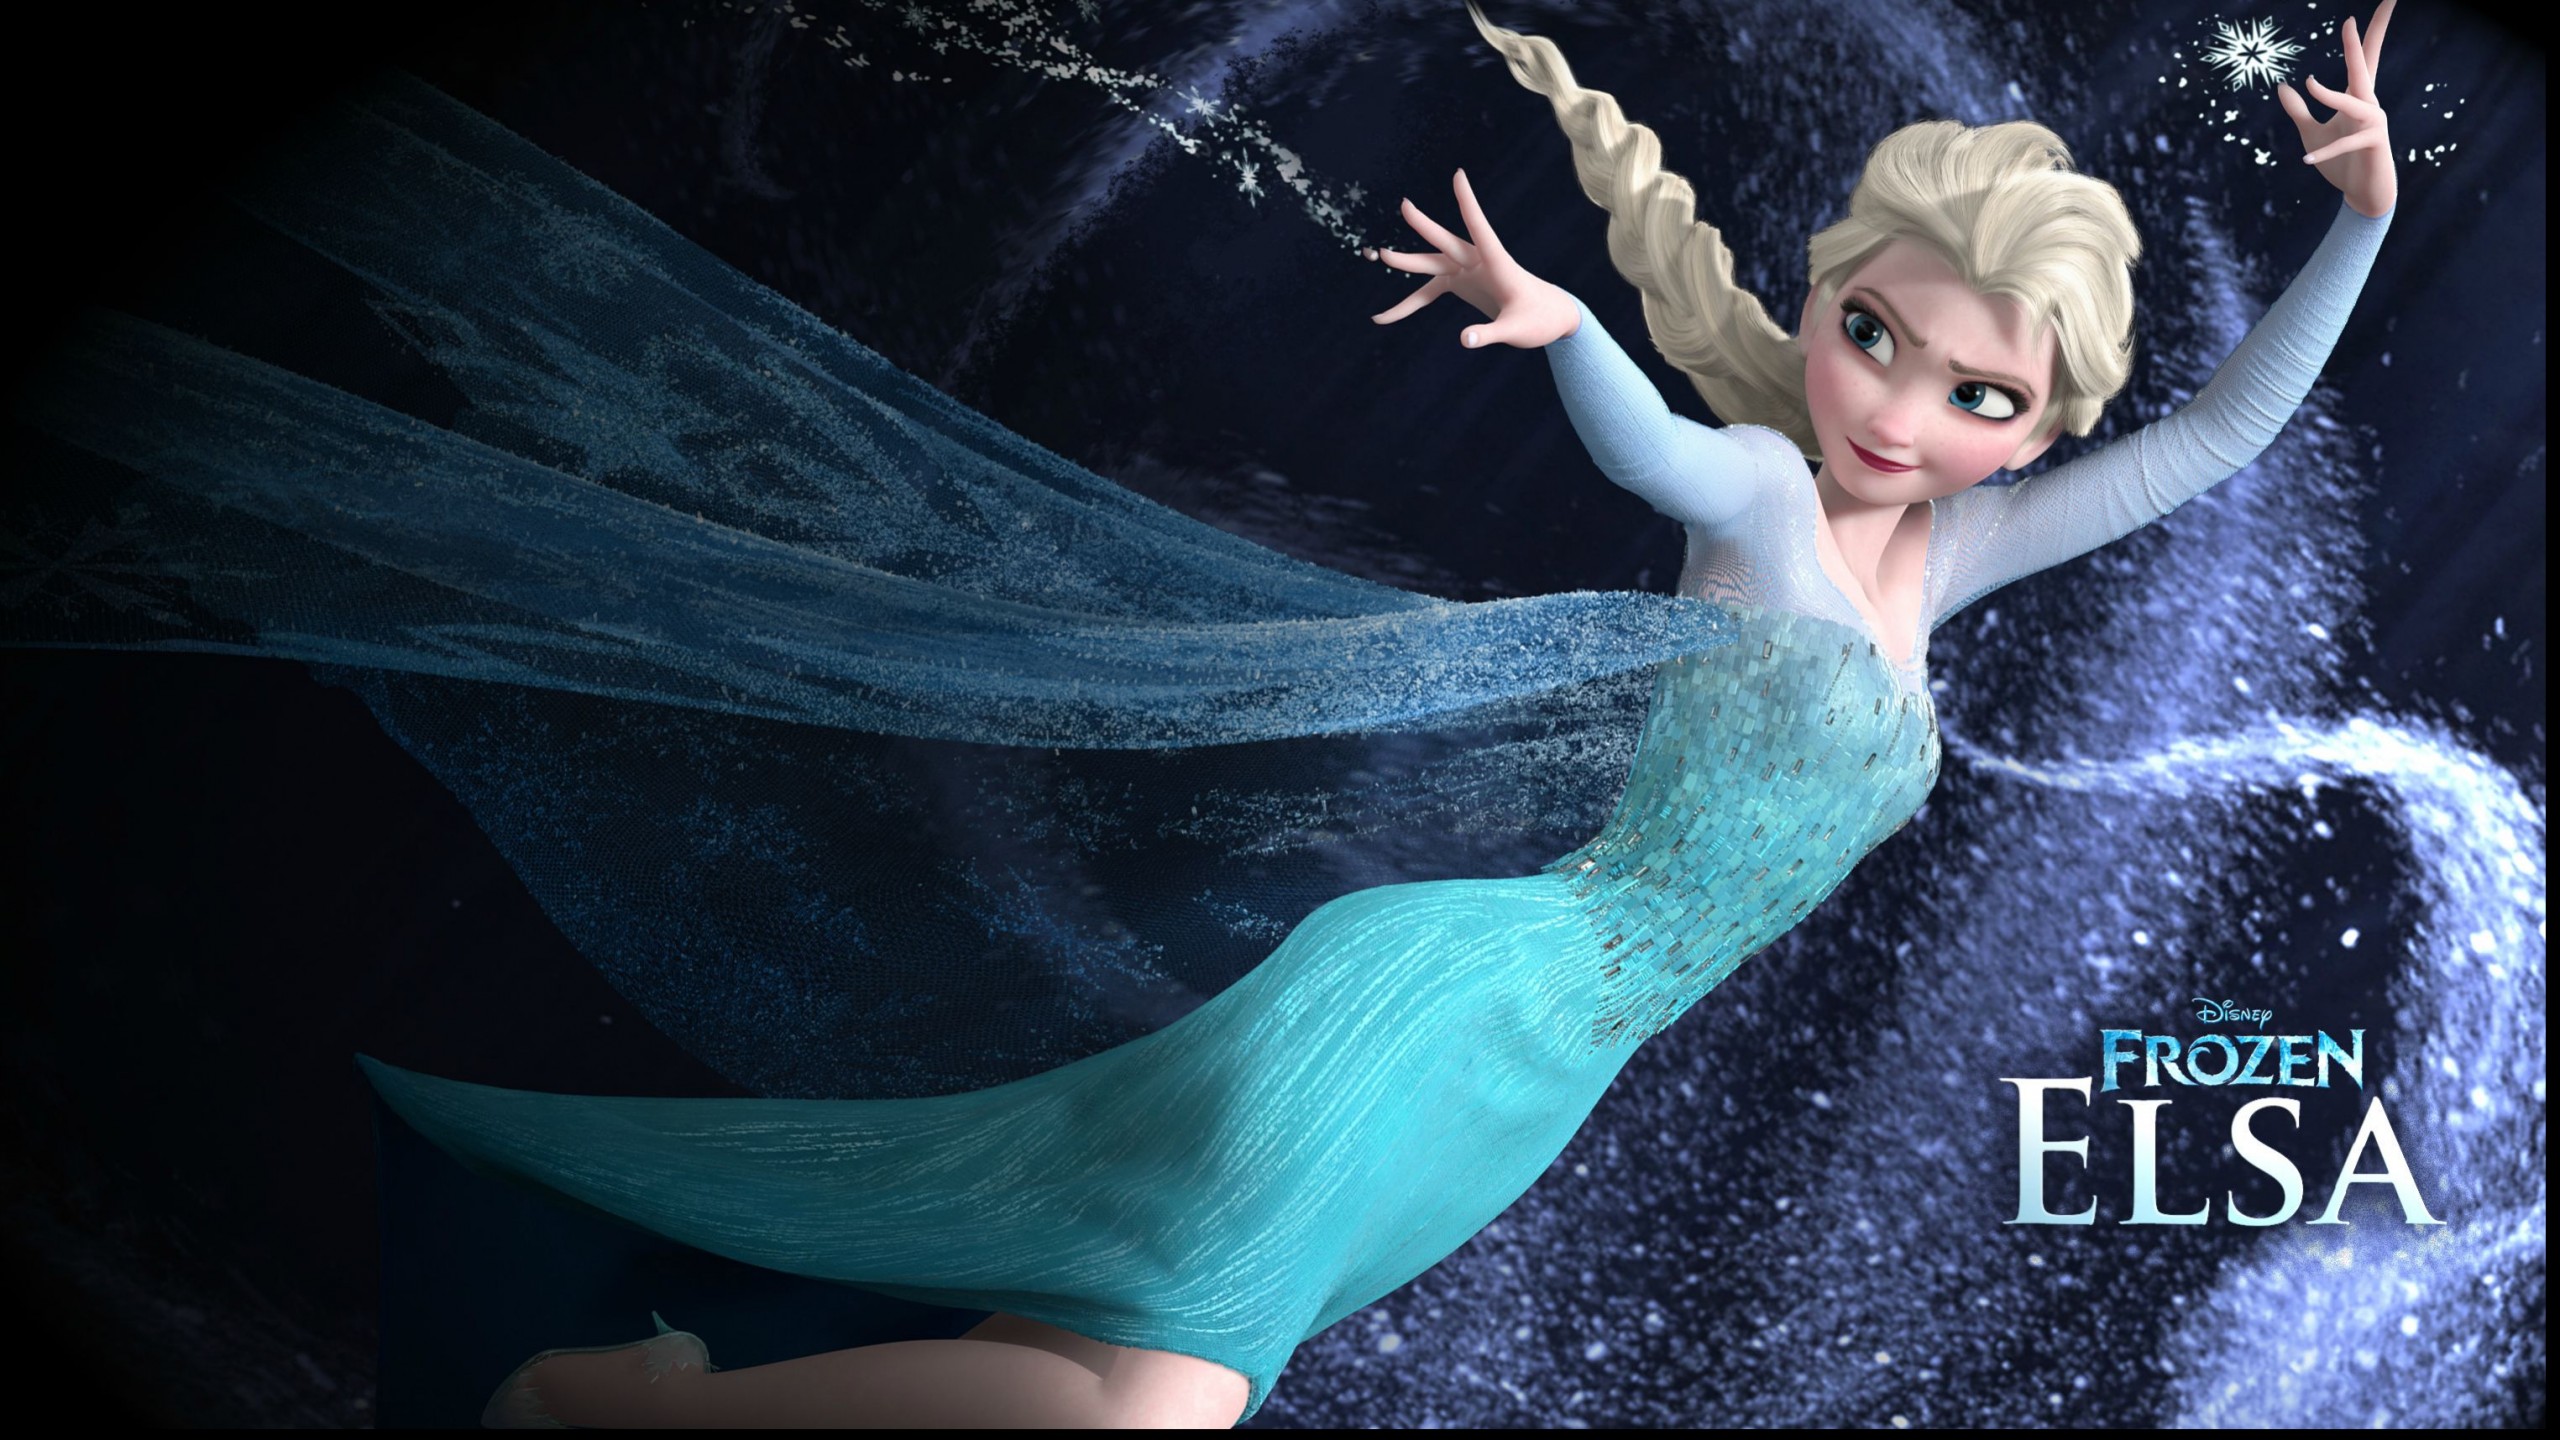 Queen Elsa From Disney Frozen Movie Wallpaper Pictures